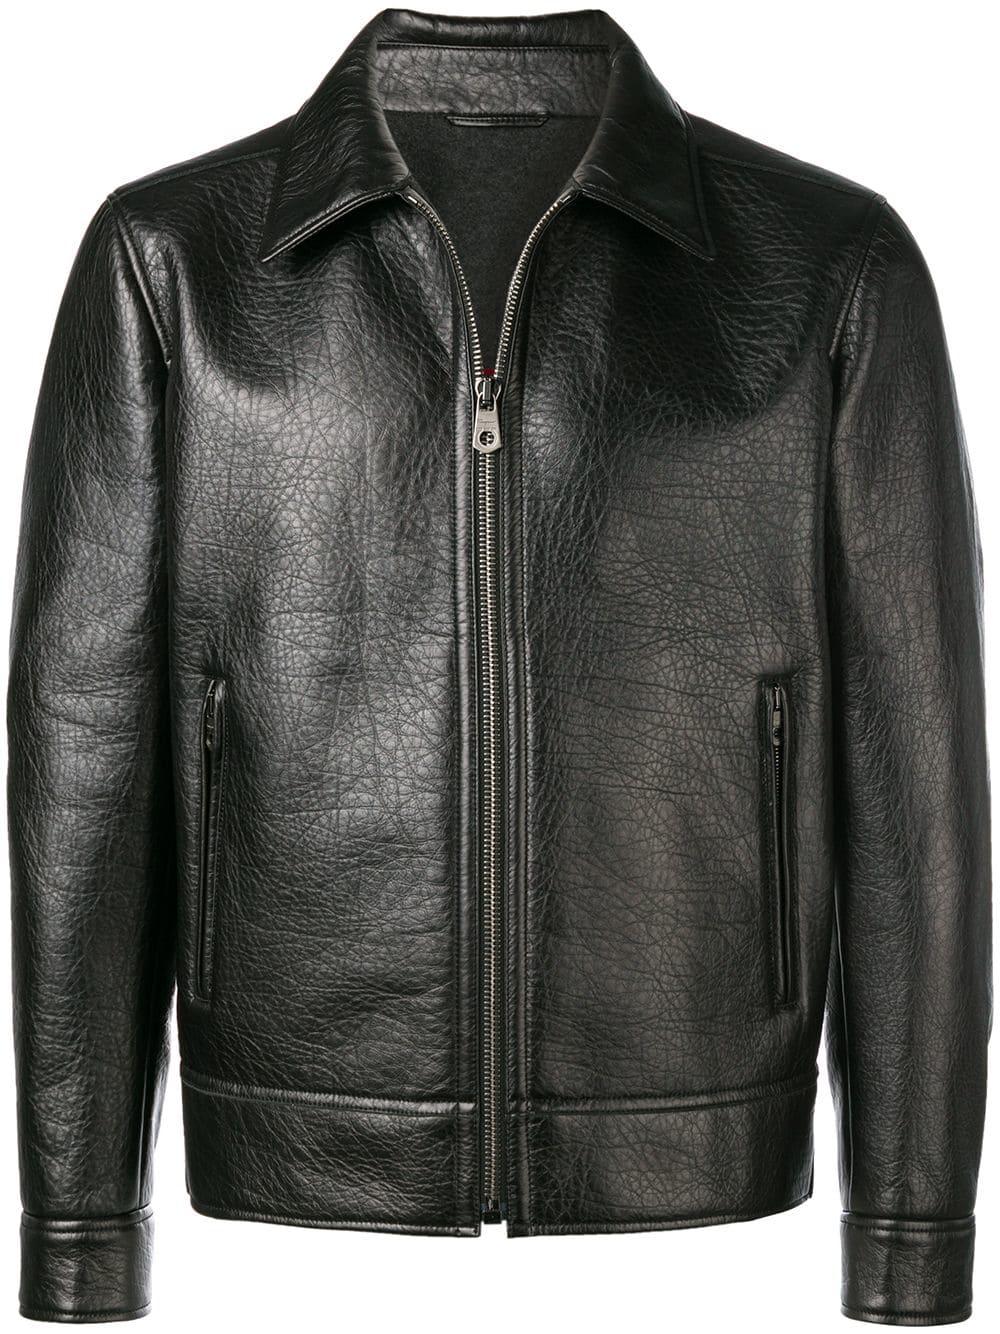 Ferragamo Leather Jacket in Black for Men - Lyst